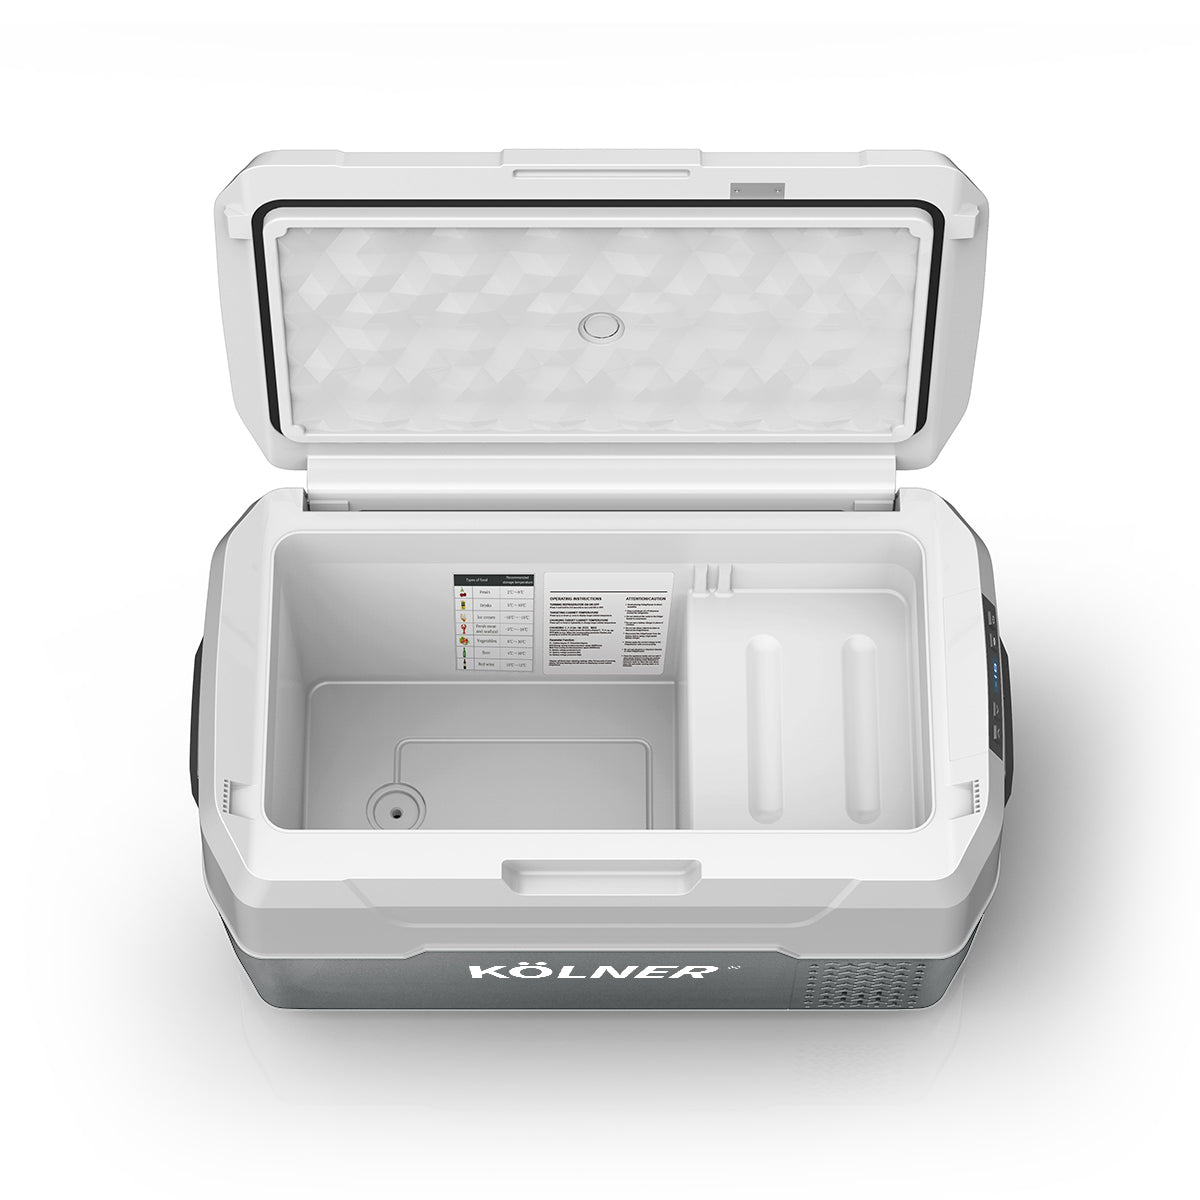 20l Fridge Freezer Cooler 12/24/240v Camping Portable Kolner Esky Refrigerator - Grey